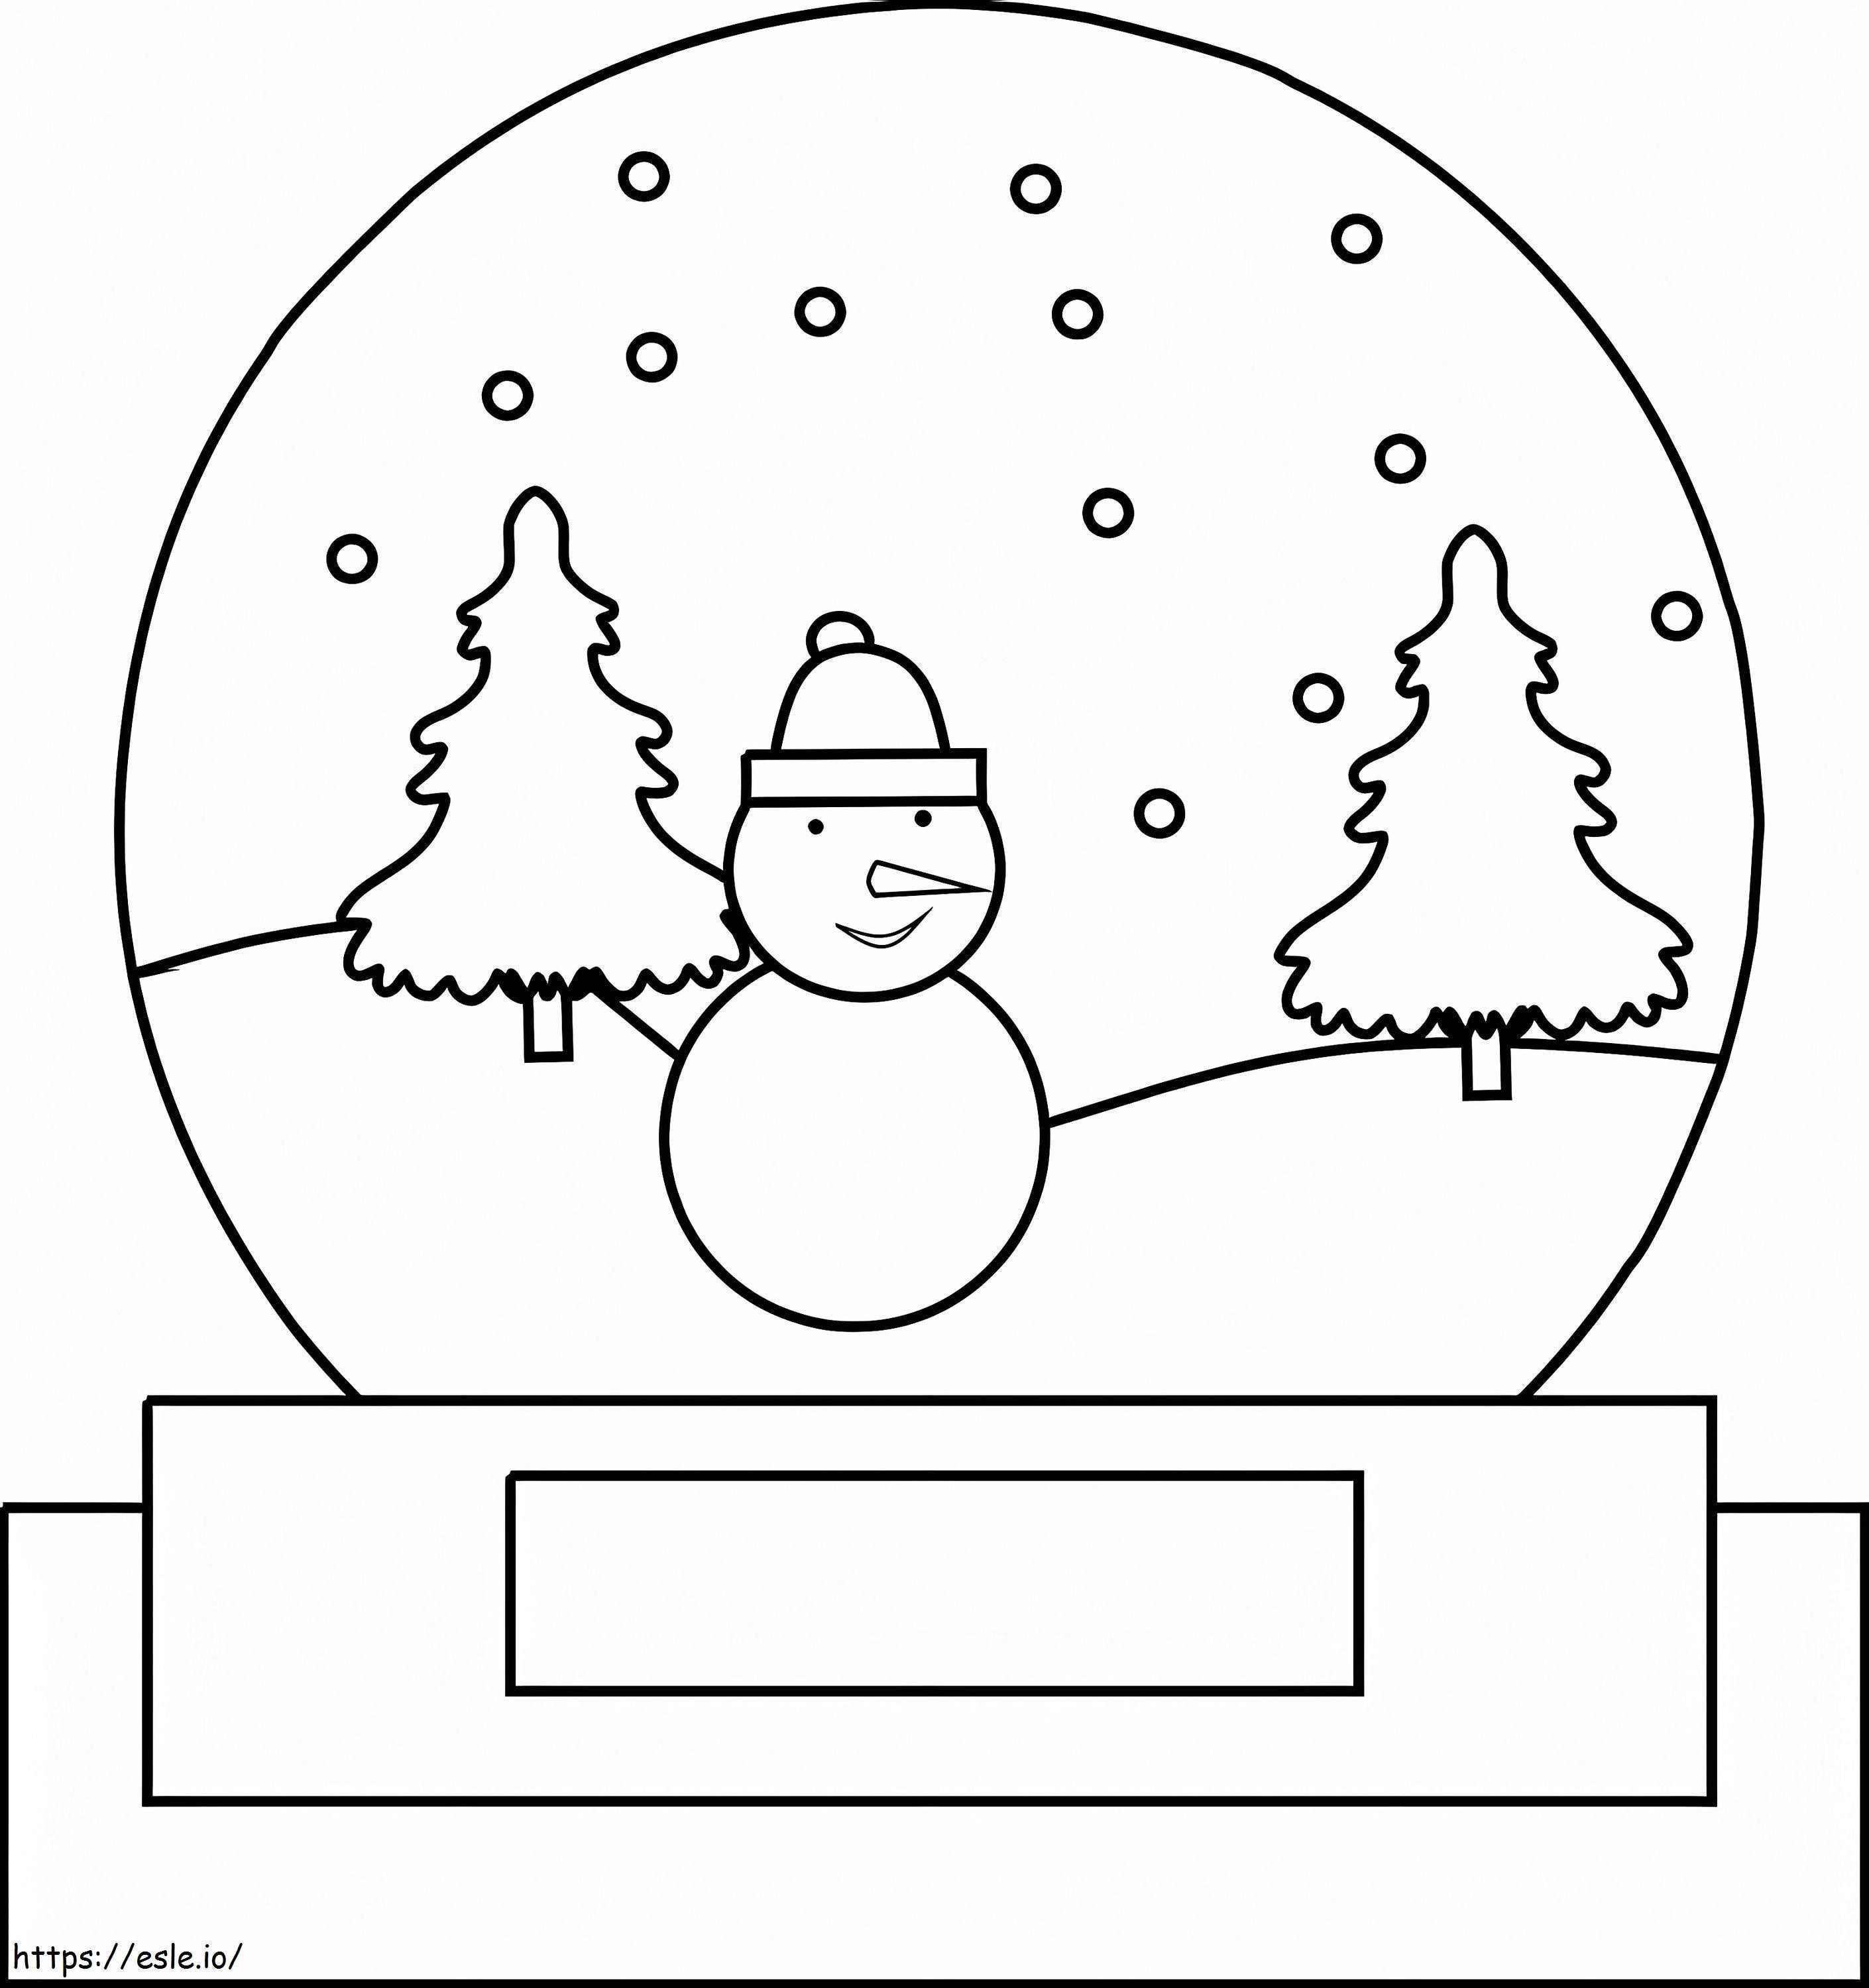 Globo de neve com boneco de neve para colorir